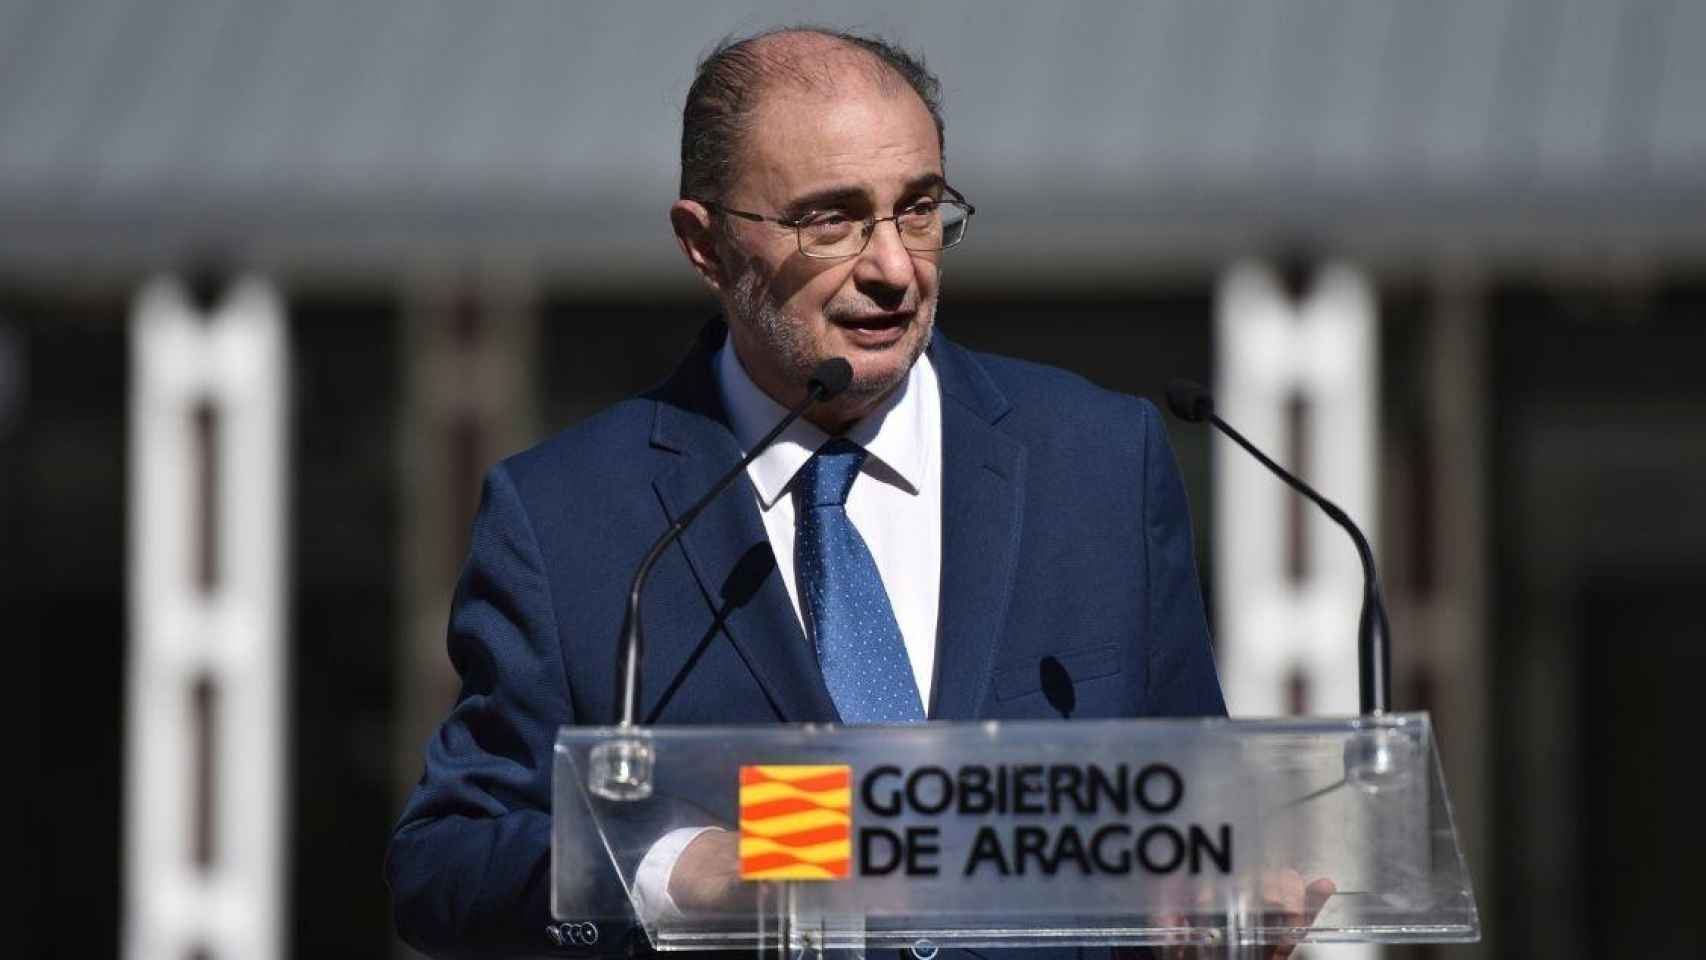 El presidente del Gobierno de Aragón, Javier Lambán / Verónica Lacasa (EP)